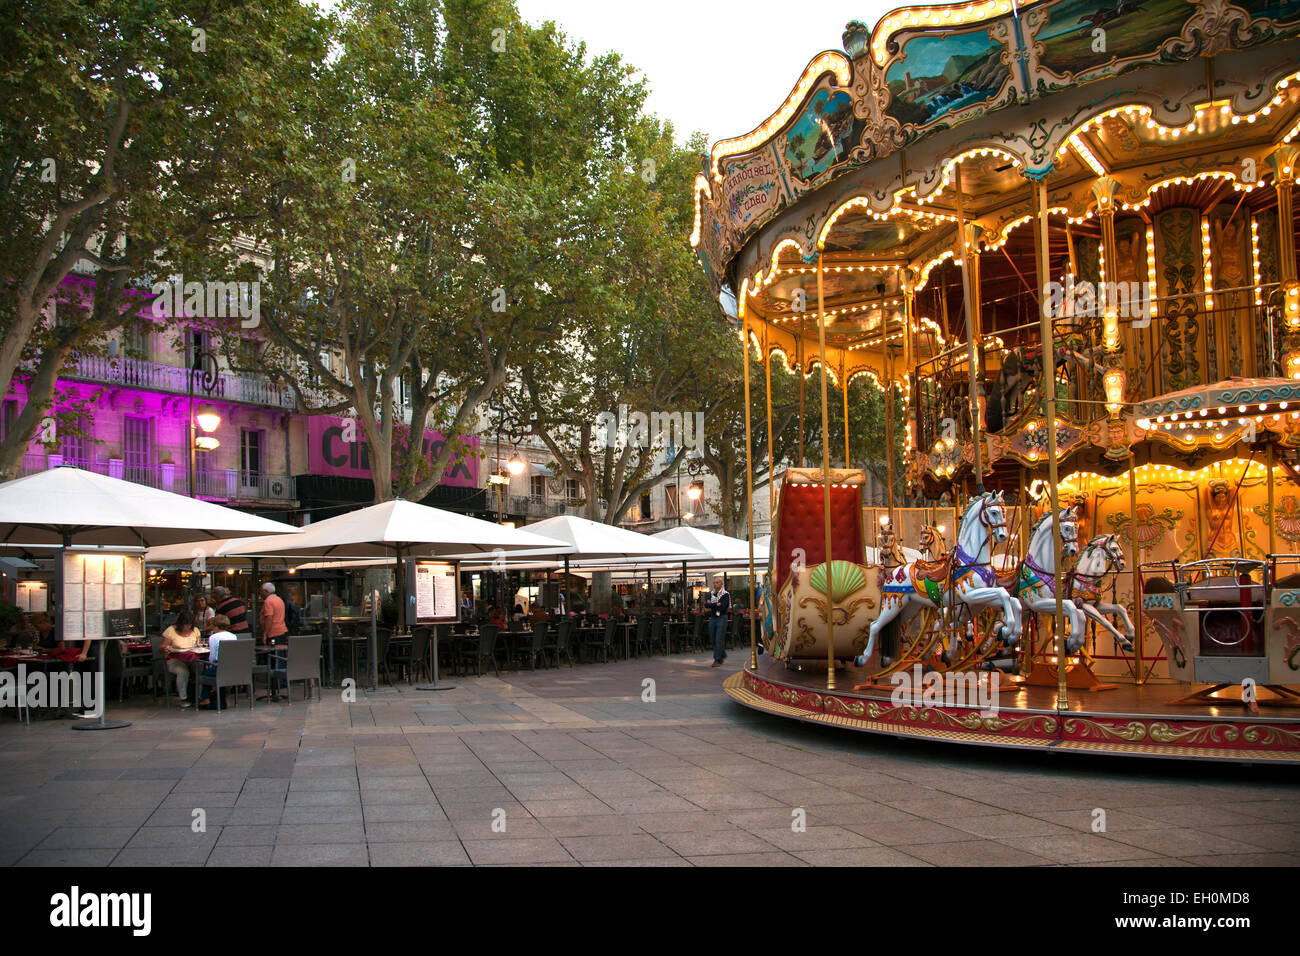 Während Spaziergänger am Abend-Angebote in einem der Cafés zu überprüfen, fügt das Karussell einen Hauch von Spaß an der Place de l ' Horloge in Stockfoto